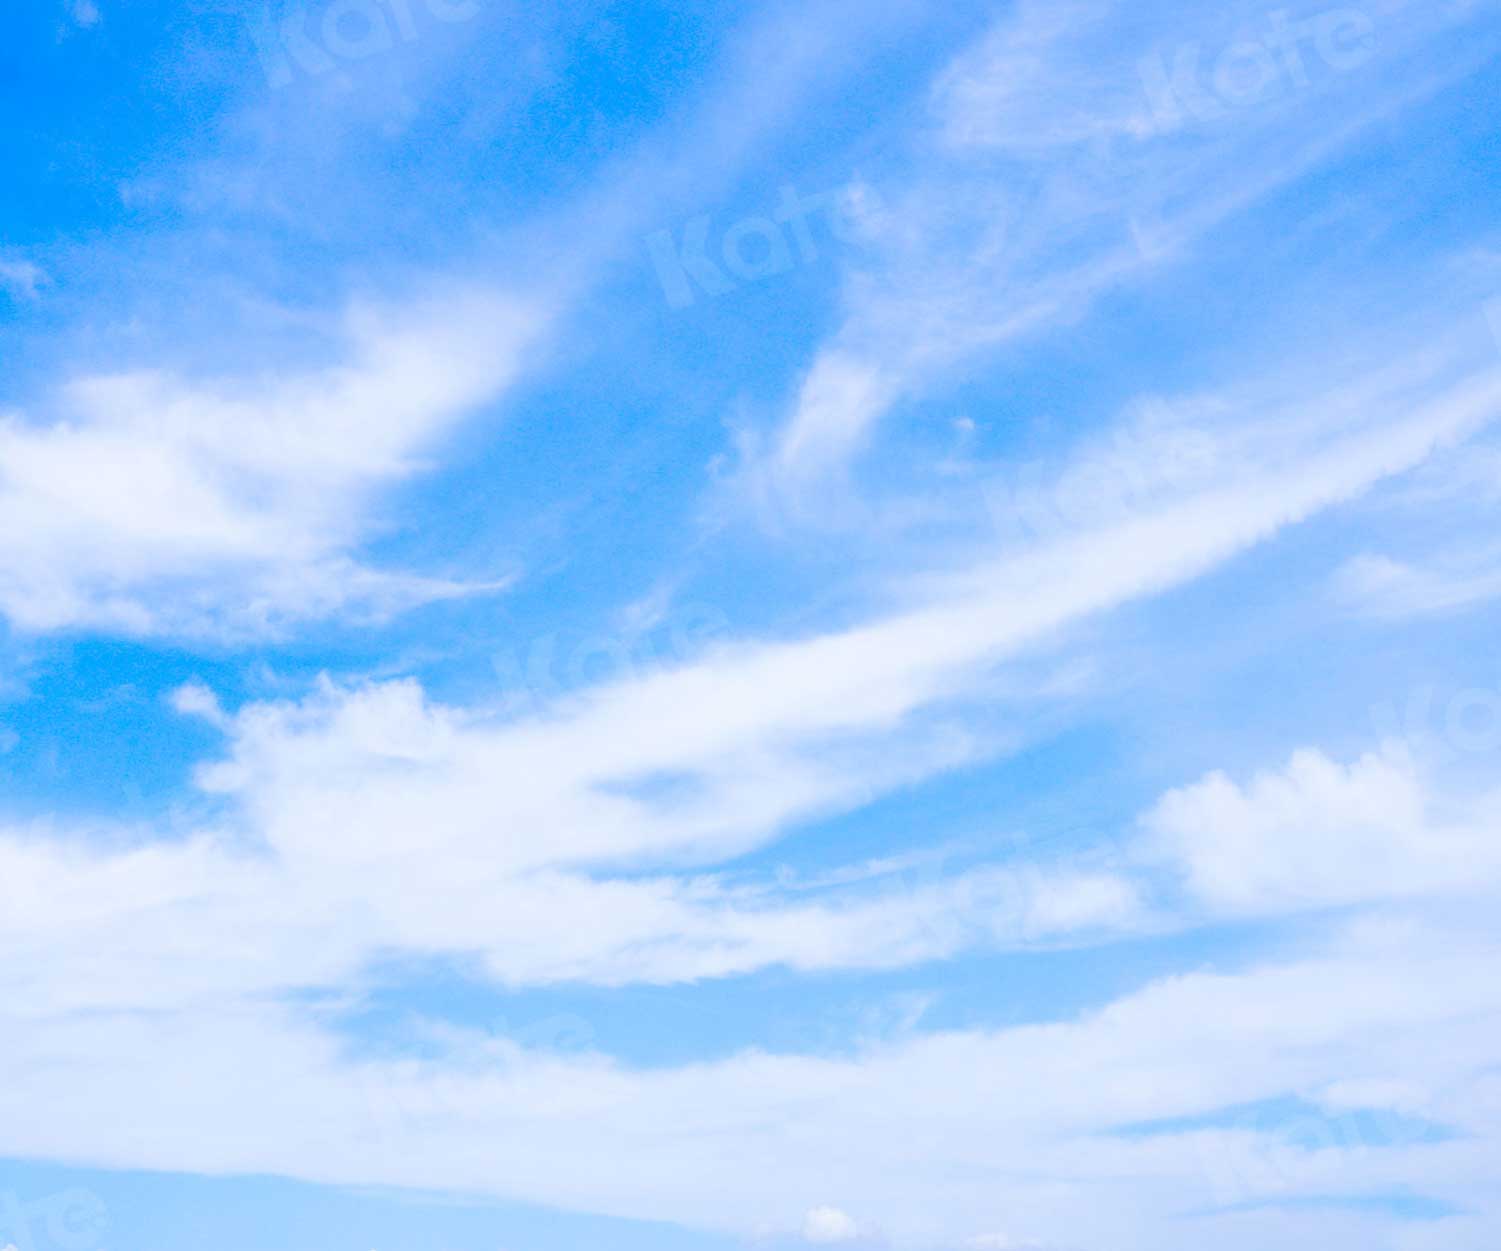 Kate paysage ciel bleu toile de fond nuages blancs pour la photographie